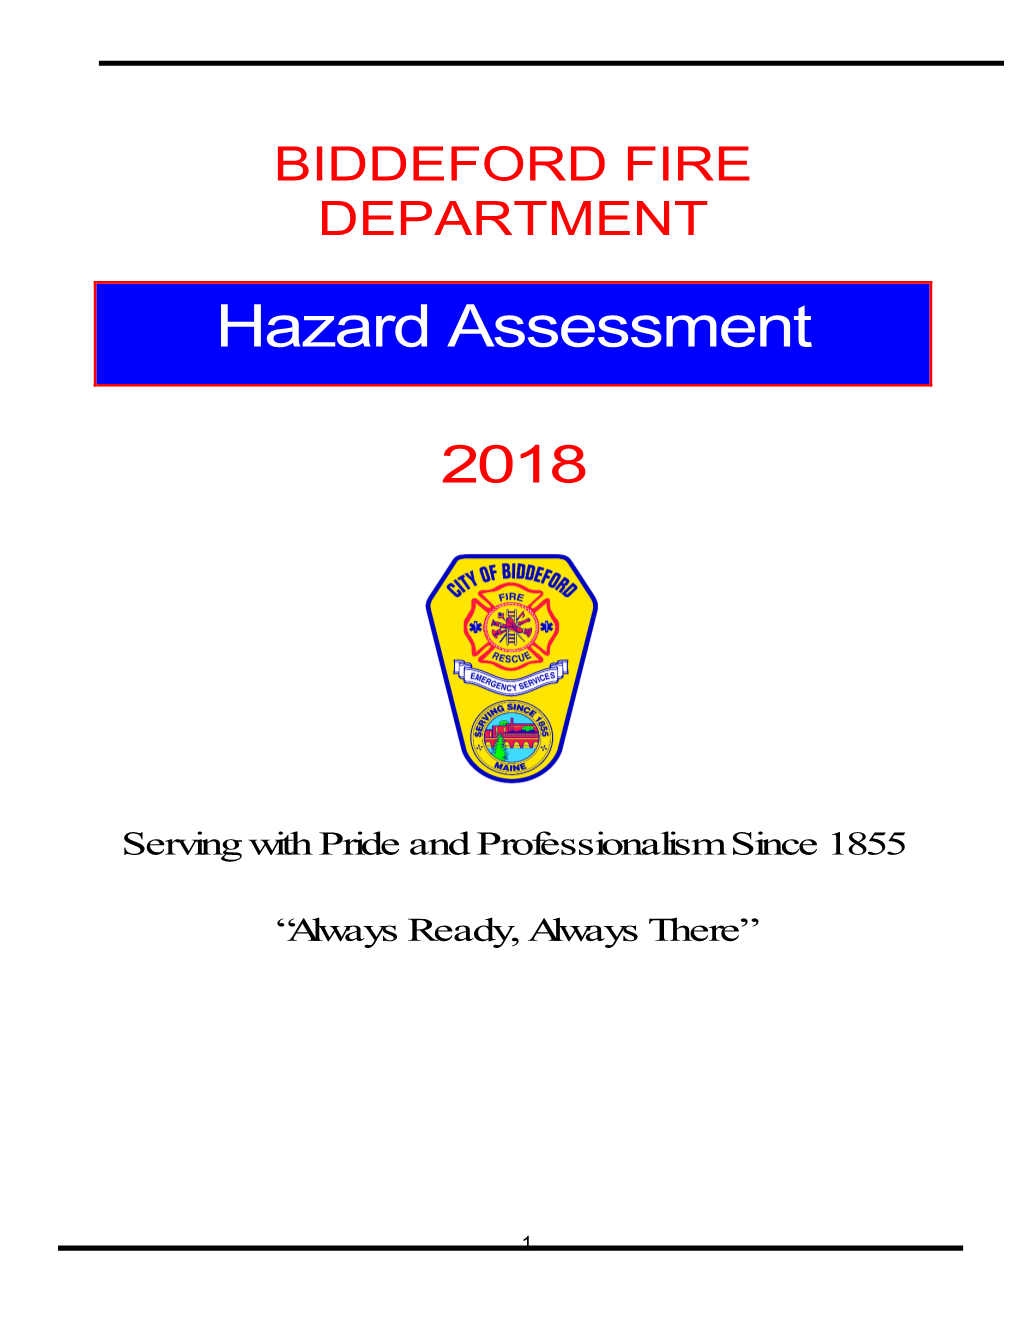 BIDDEFORD FIRE DEPARTMENT Hazard Assessment